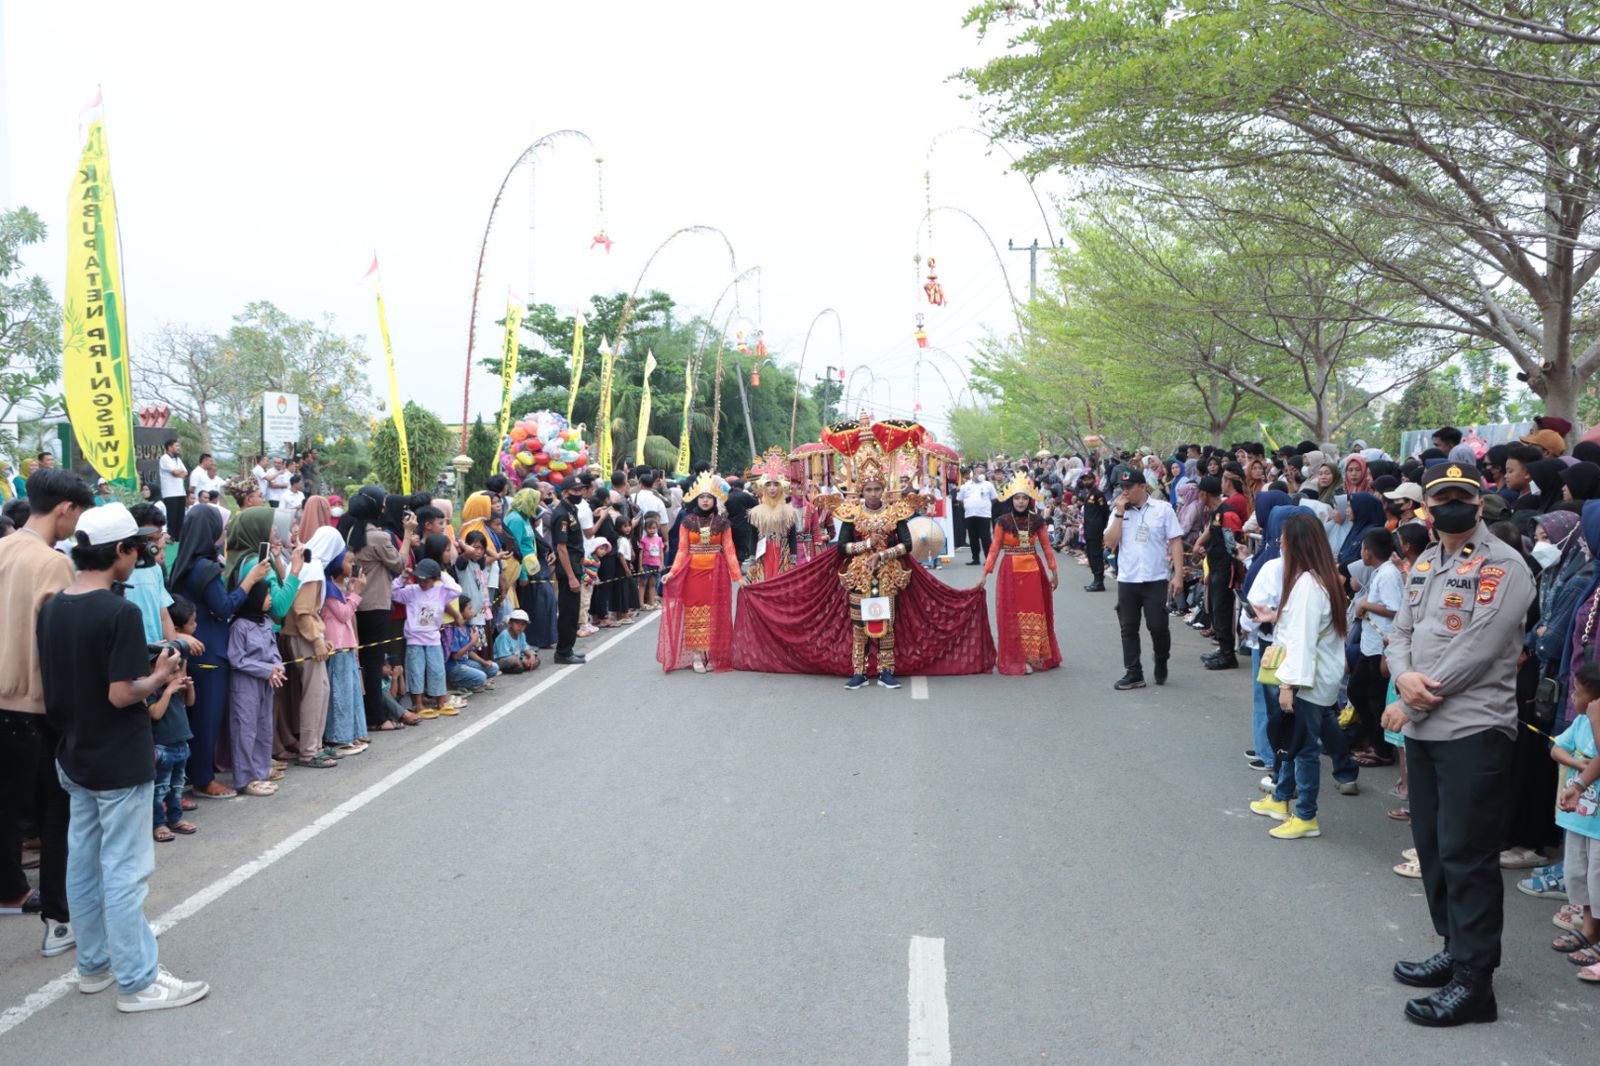 Amankan Pringsewu Street Carnaval, Ratusan Polisi Dikerahkan